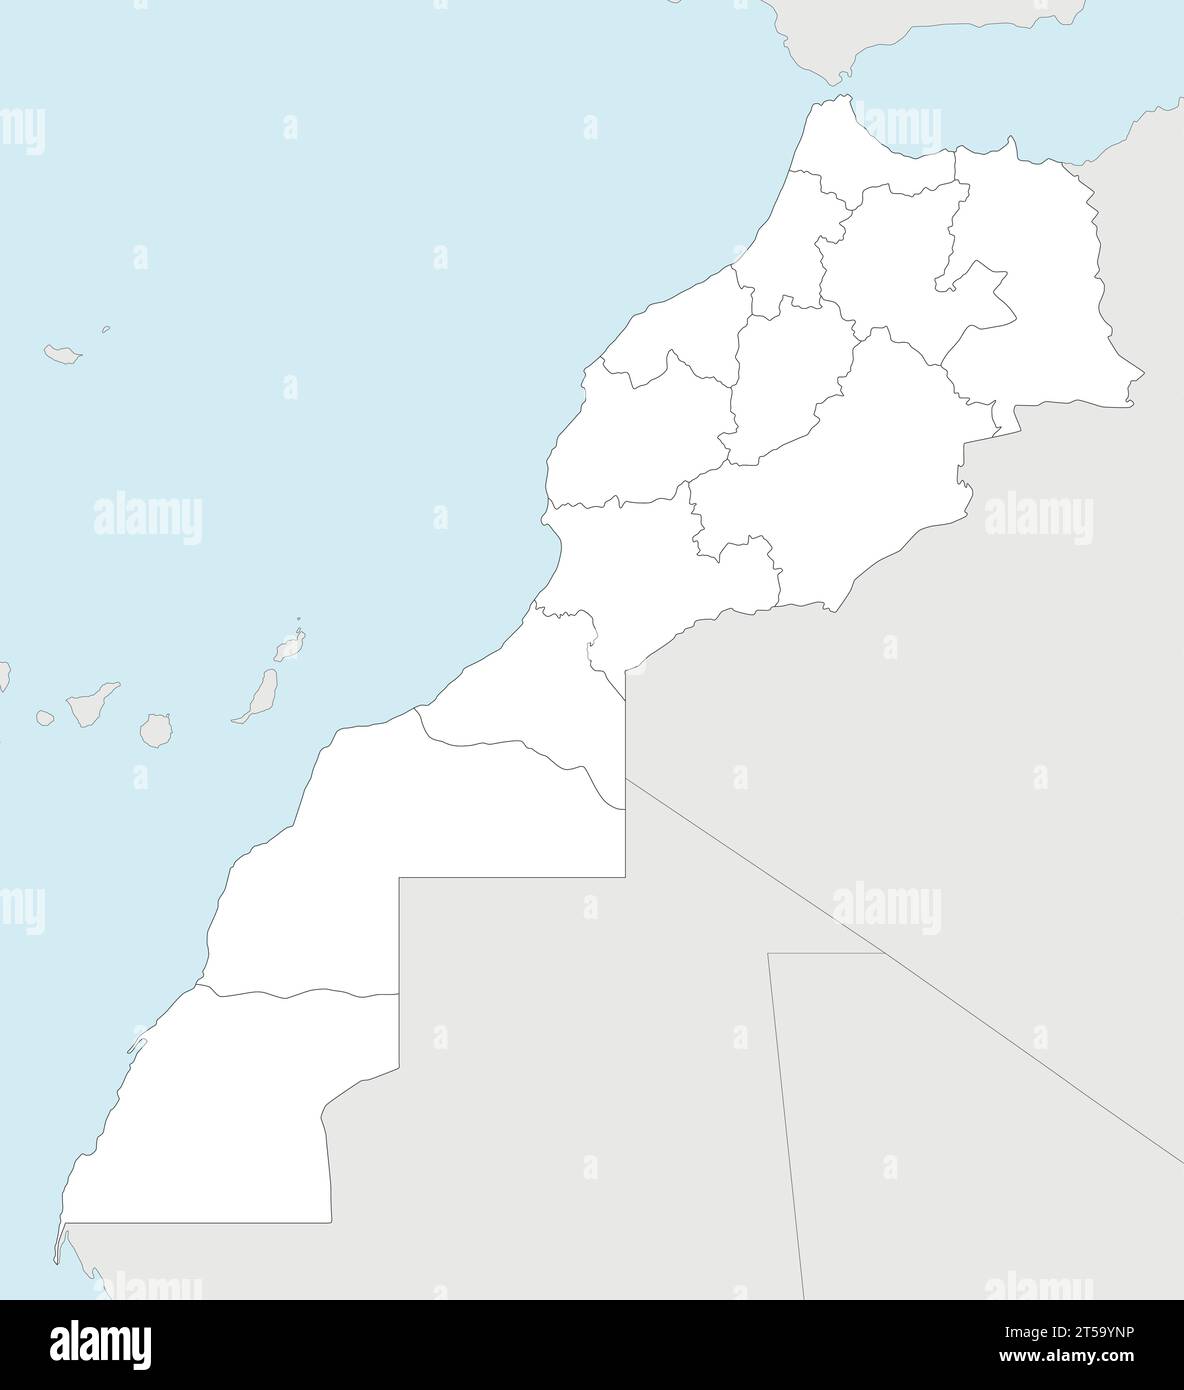 Mappa vettoriale vuota del Marocco con regioni e divisioni amministrative e paesi vicini. Livelli modificabili e chiaramente etichettati. Illustrazione Vettoriale